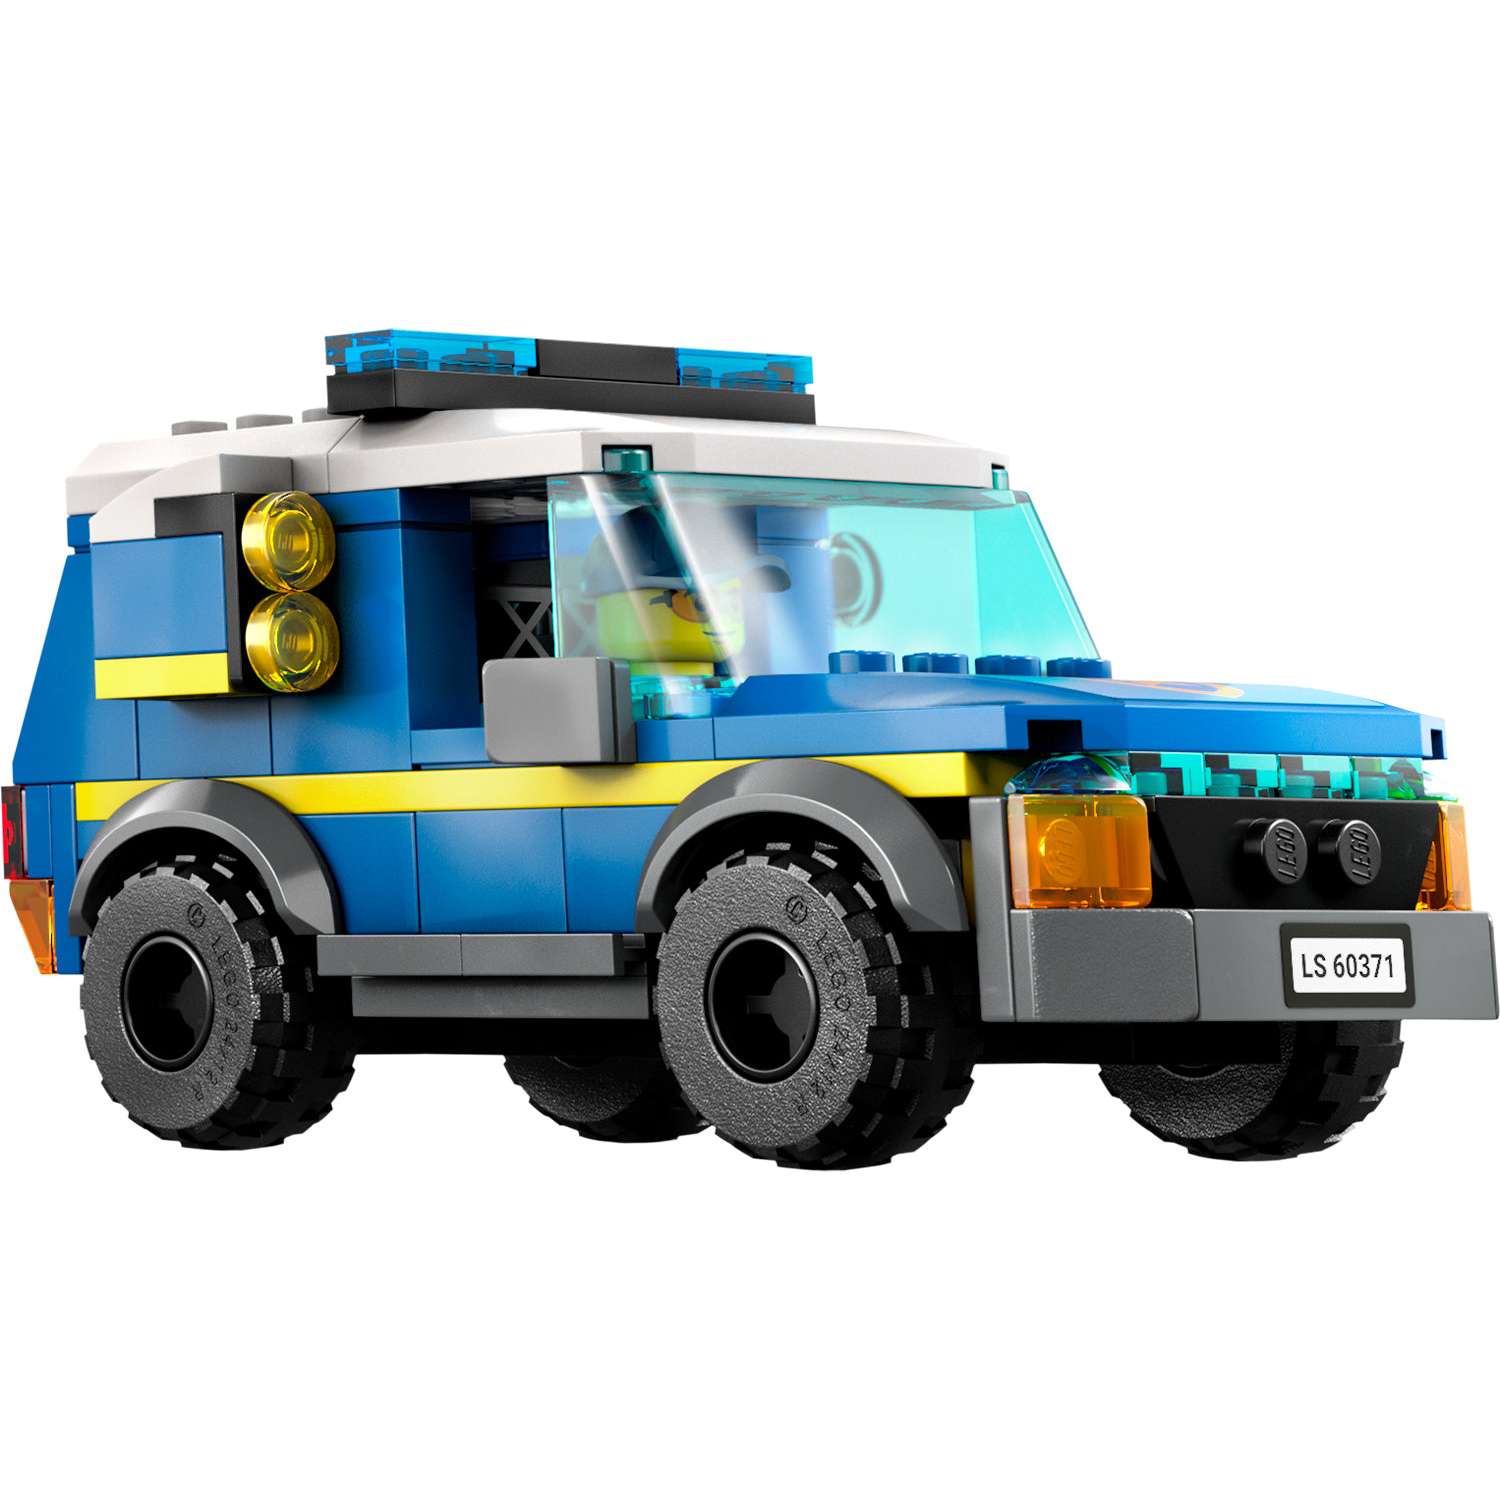 Конструктор LEGO City Fire «Штаб спасательных транспортных средств» 706 деталей 60371 - фото 7